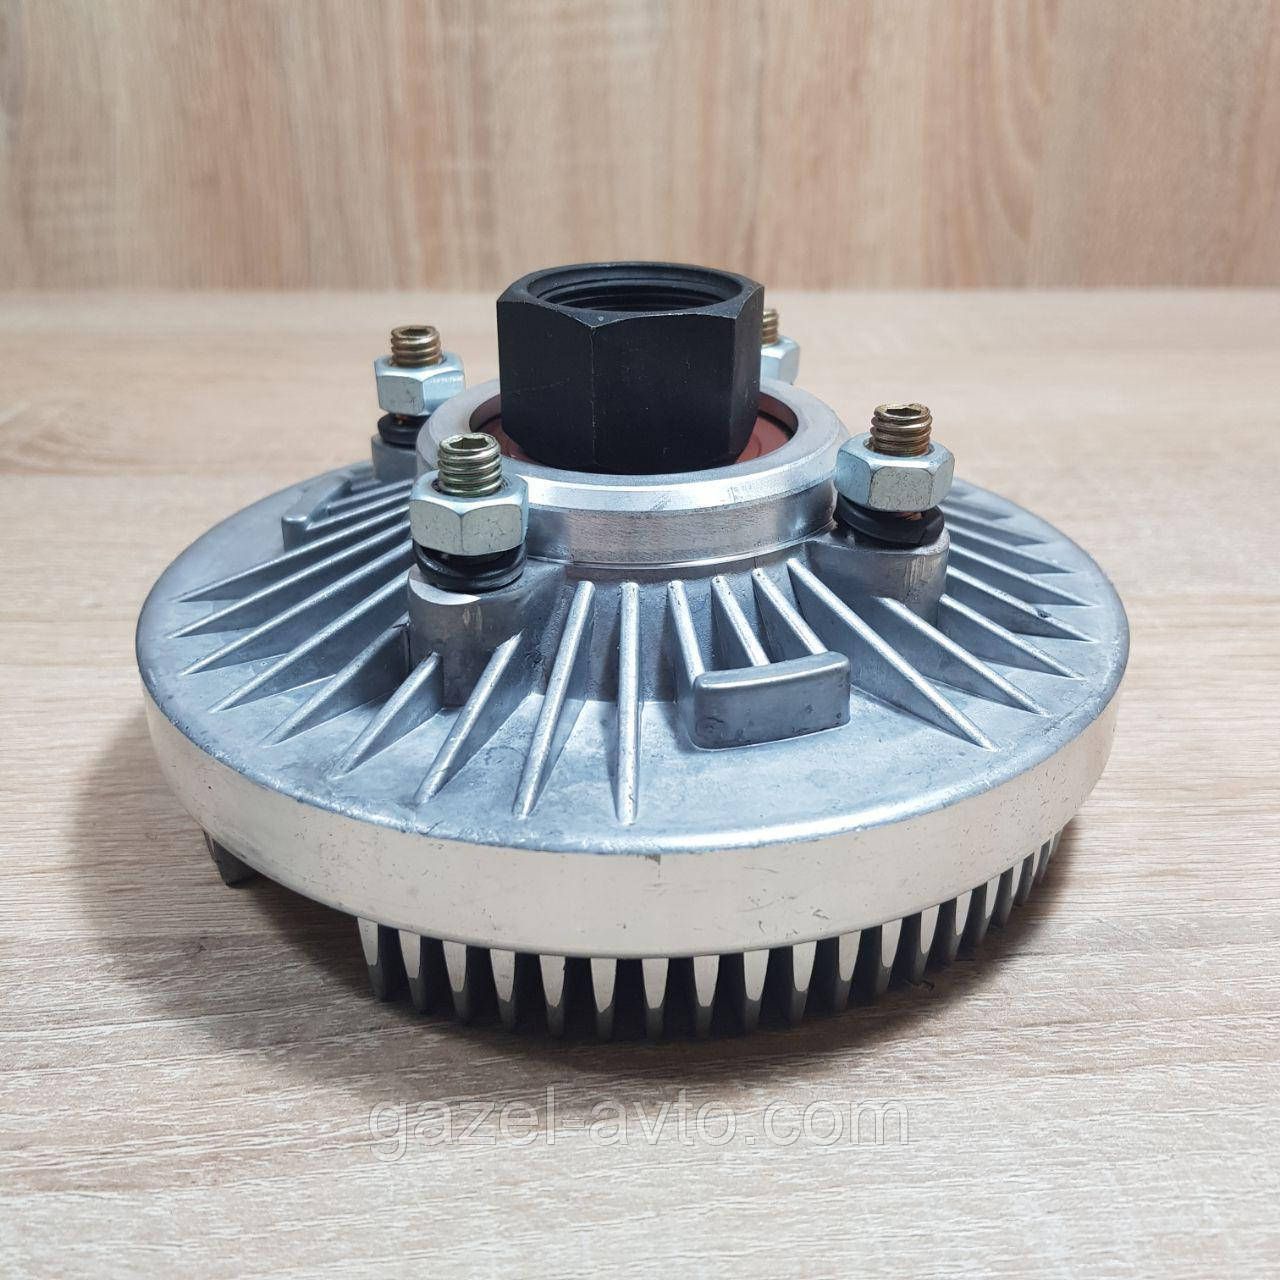 Гидромуфта вентилятора радиатора УАЗ-452, 469, Хантер, Патриот (пр-во УАЗ, УМЗ)